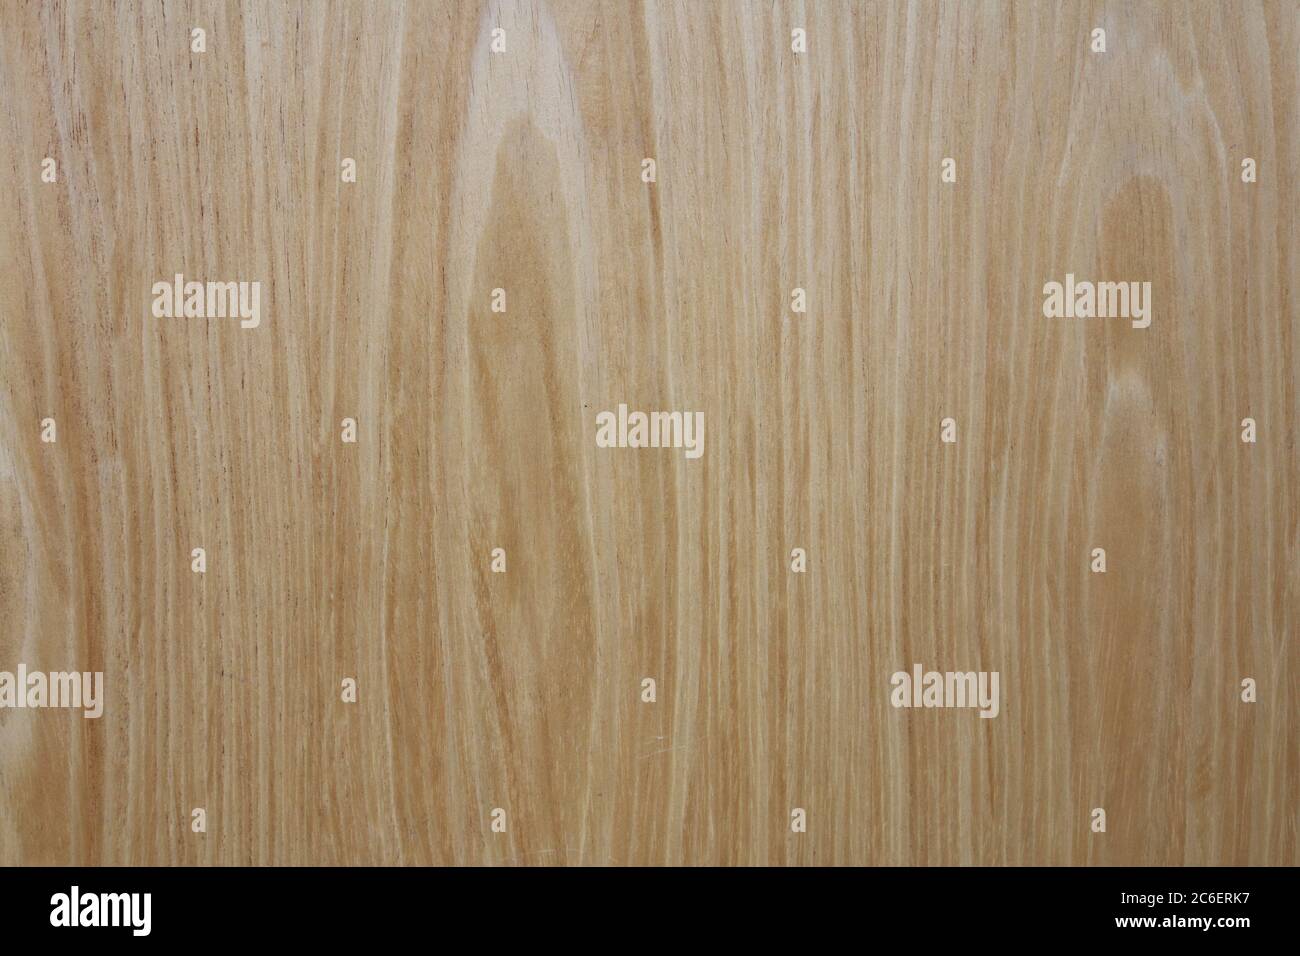 Ein helles Holz Maserung Panel Wand Hintergrund Stockfoto